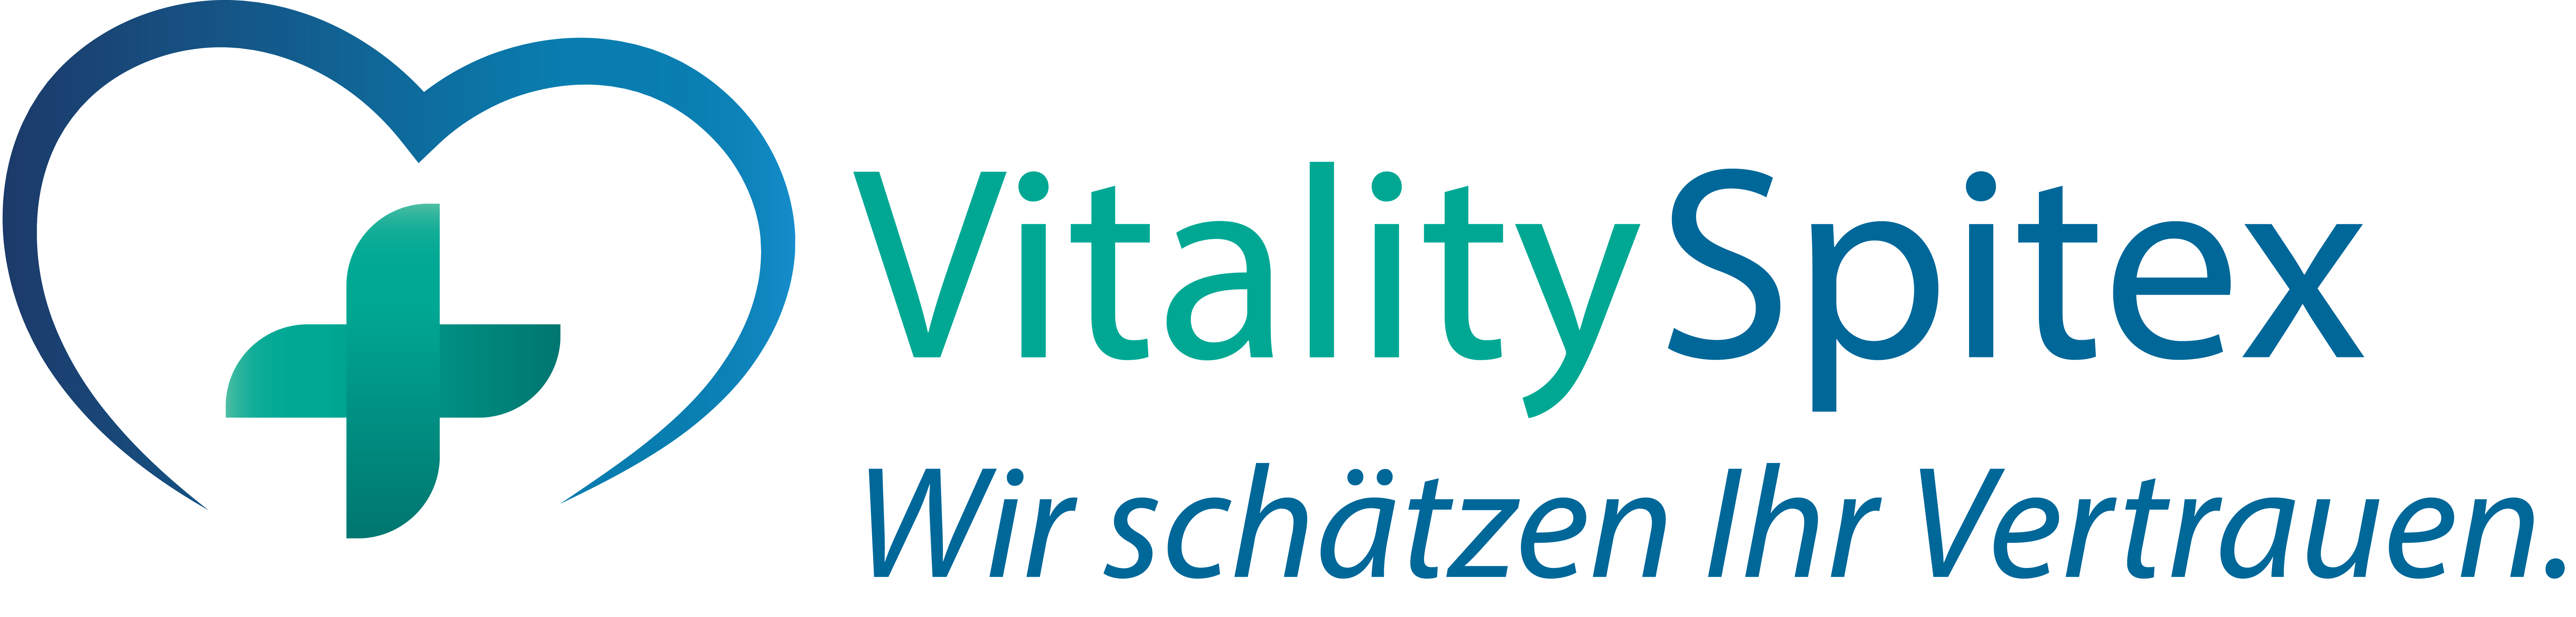 Vitality Spitex GmbH